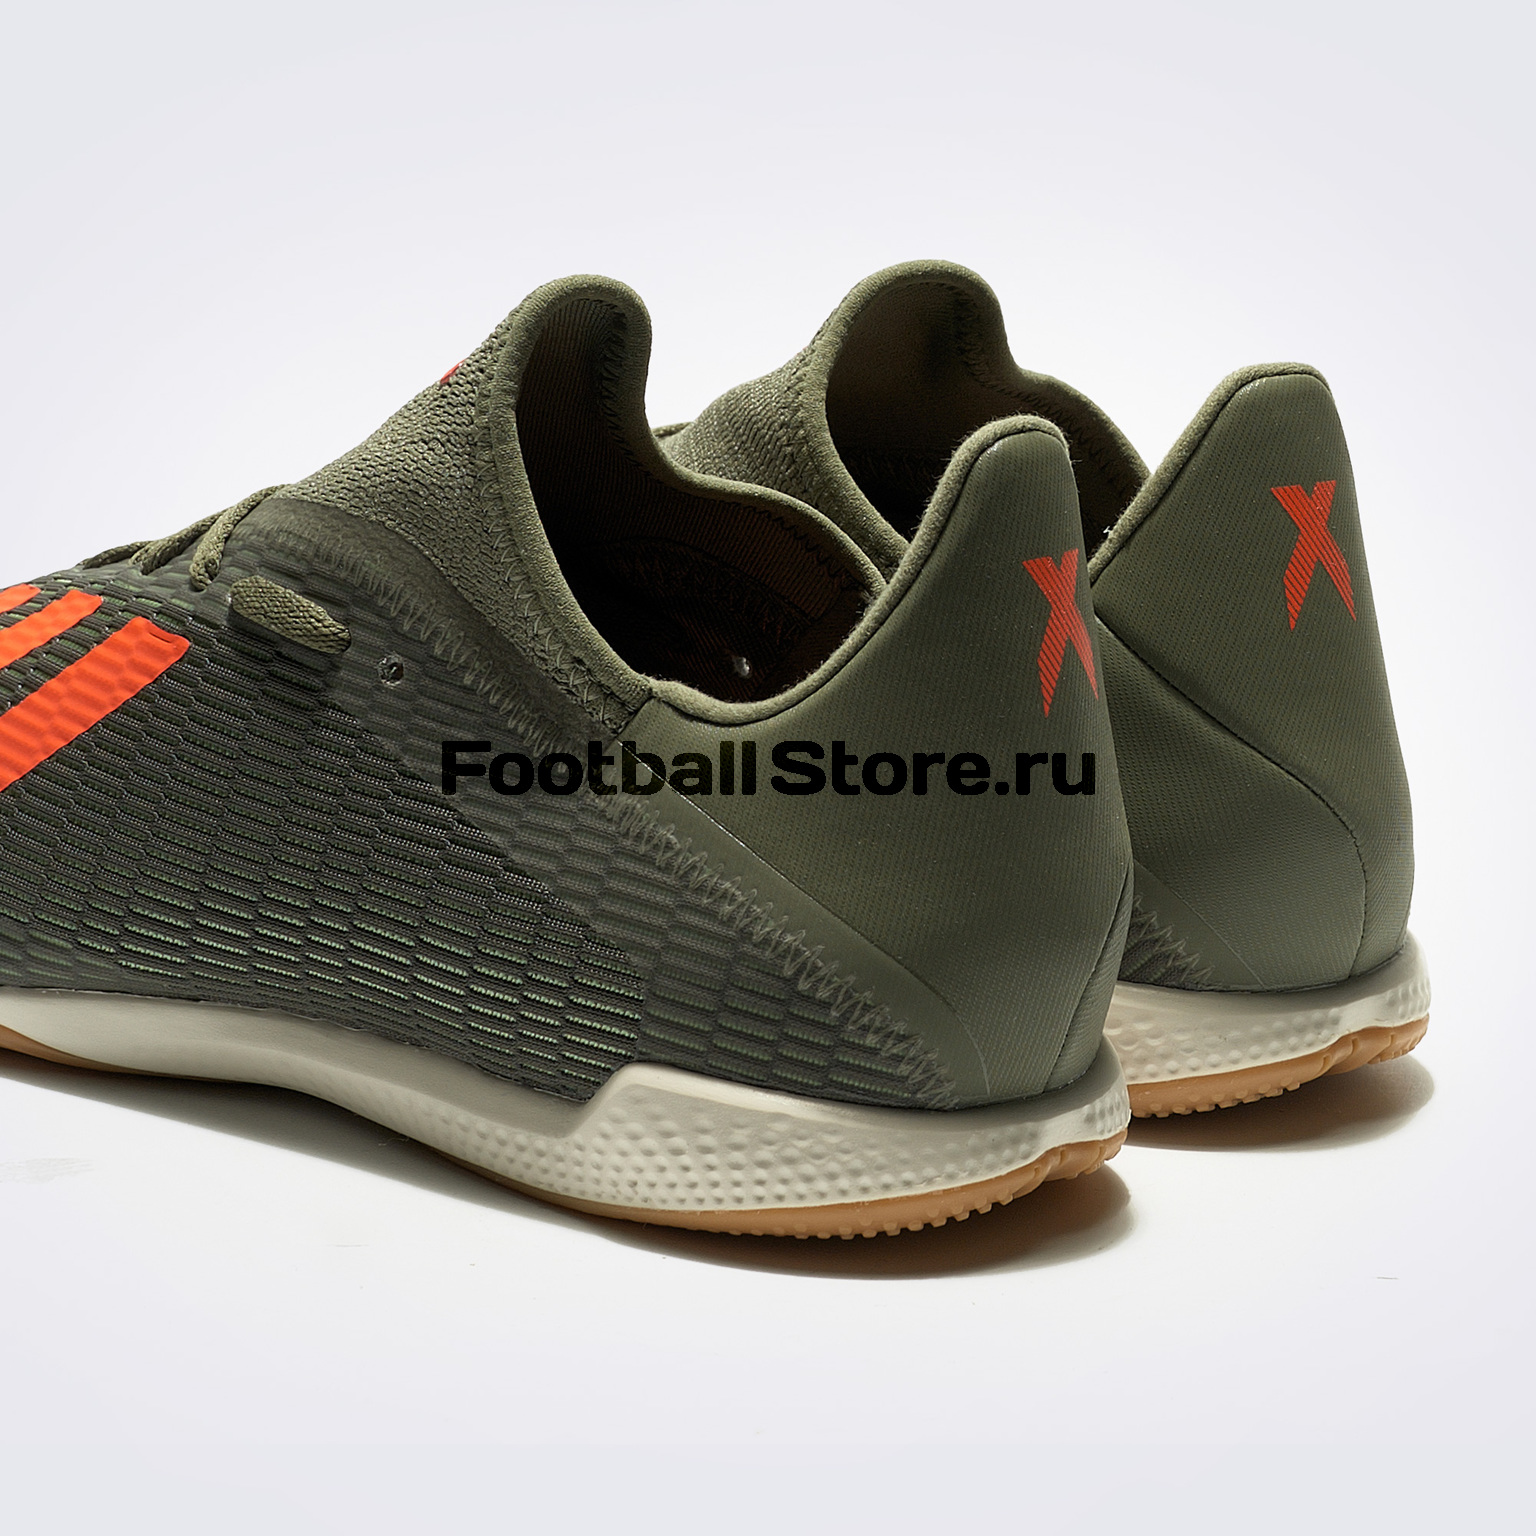 Футзалки Adidas X 19.3 IN EF8367